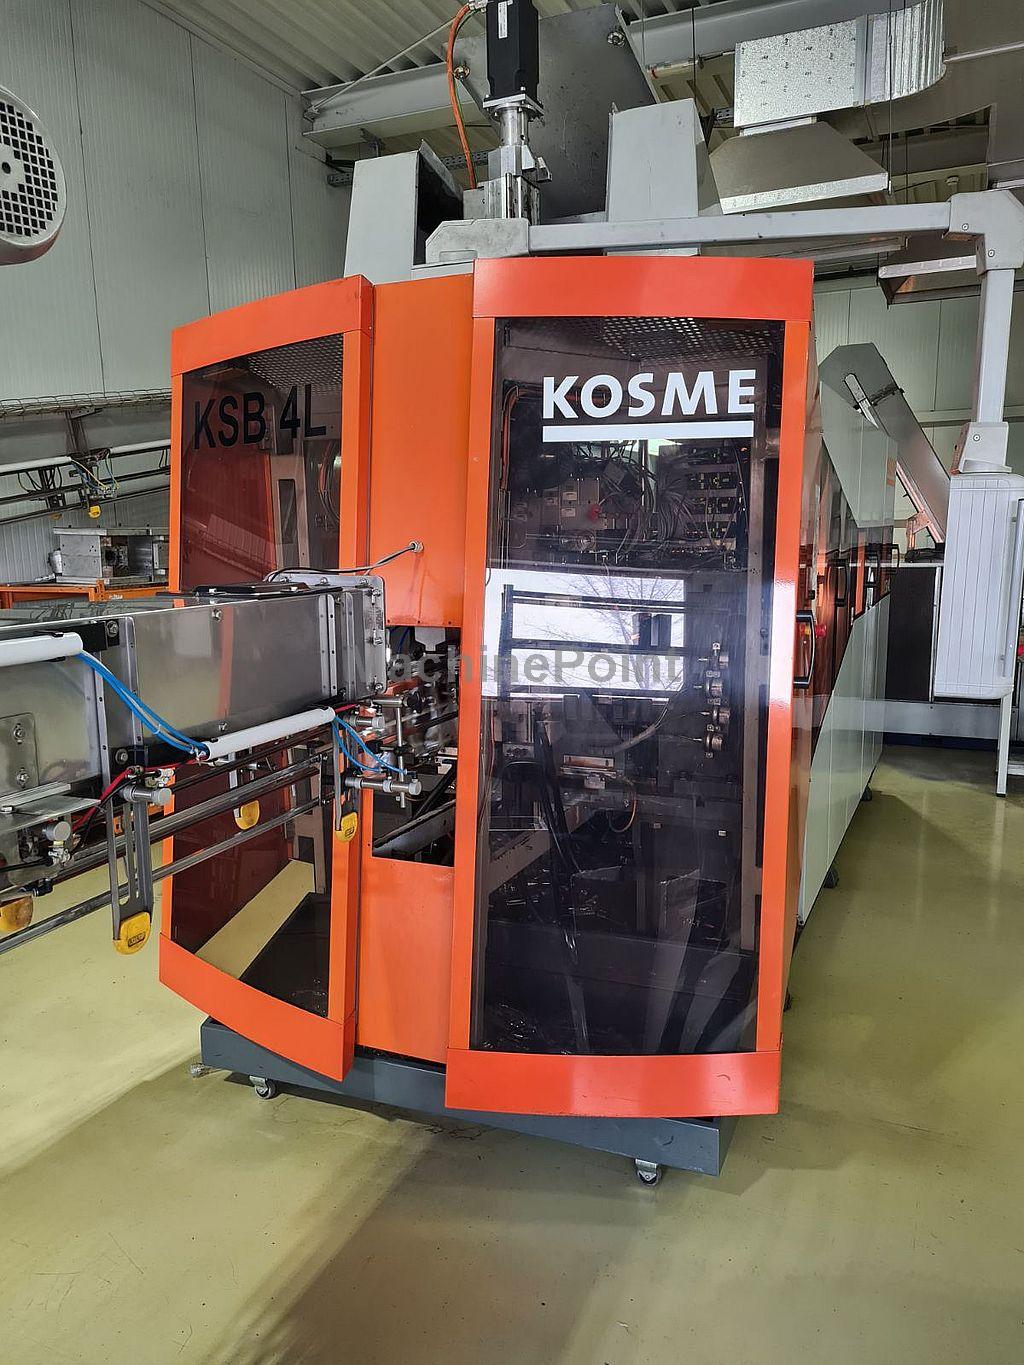 KOSME - KSB 4000 - Kullanılmış makine